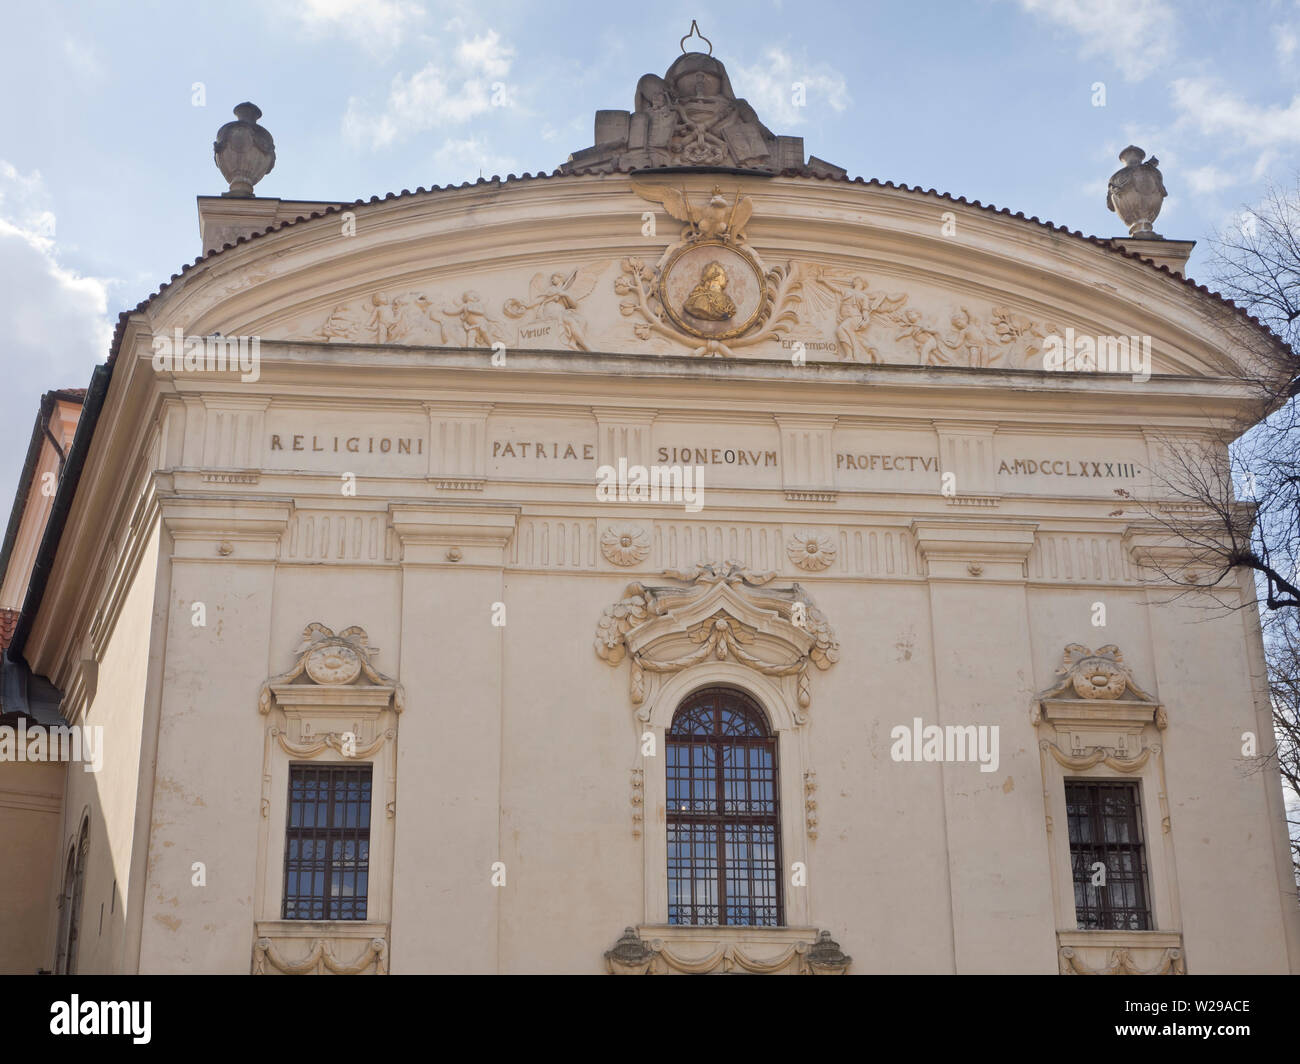 El barroco Monasterio Strahov es una importante atracción turística en Praga, República Checa, aquí la fachada de la biblioteca Foto de stock